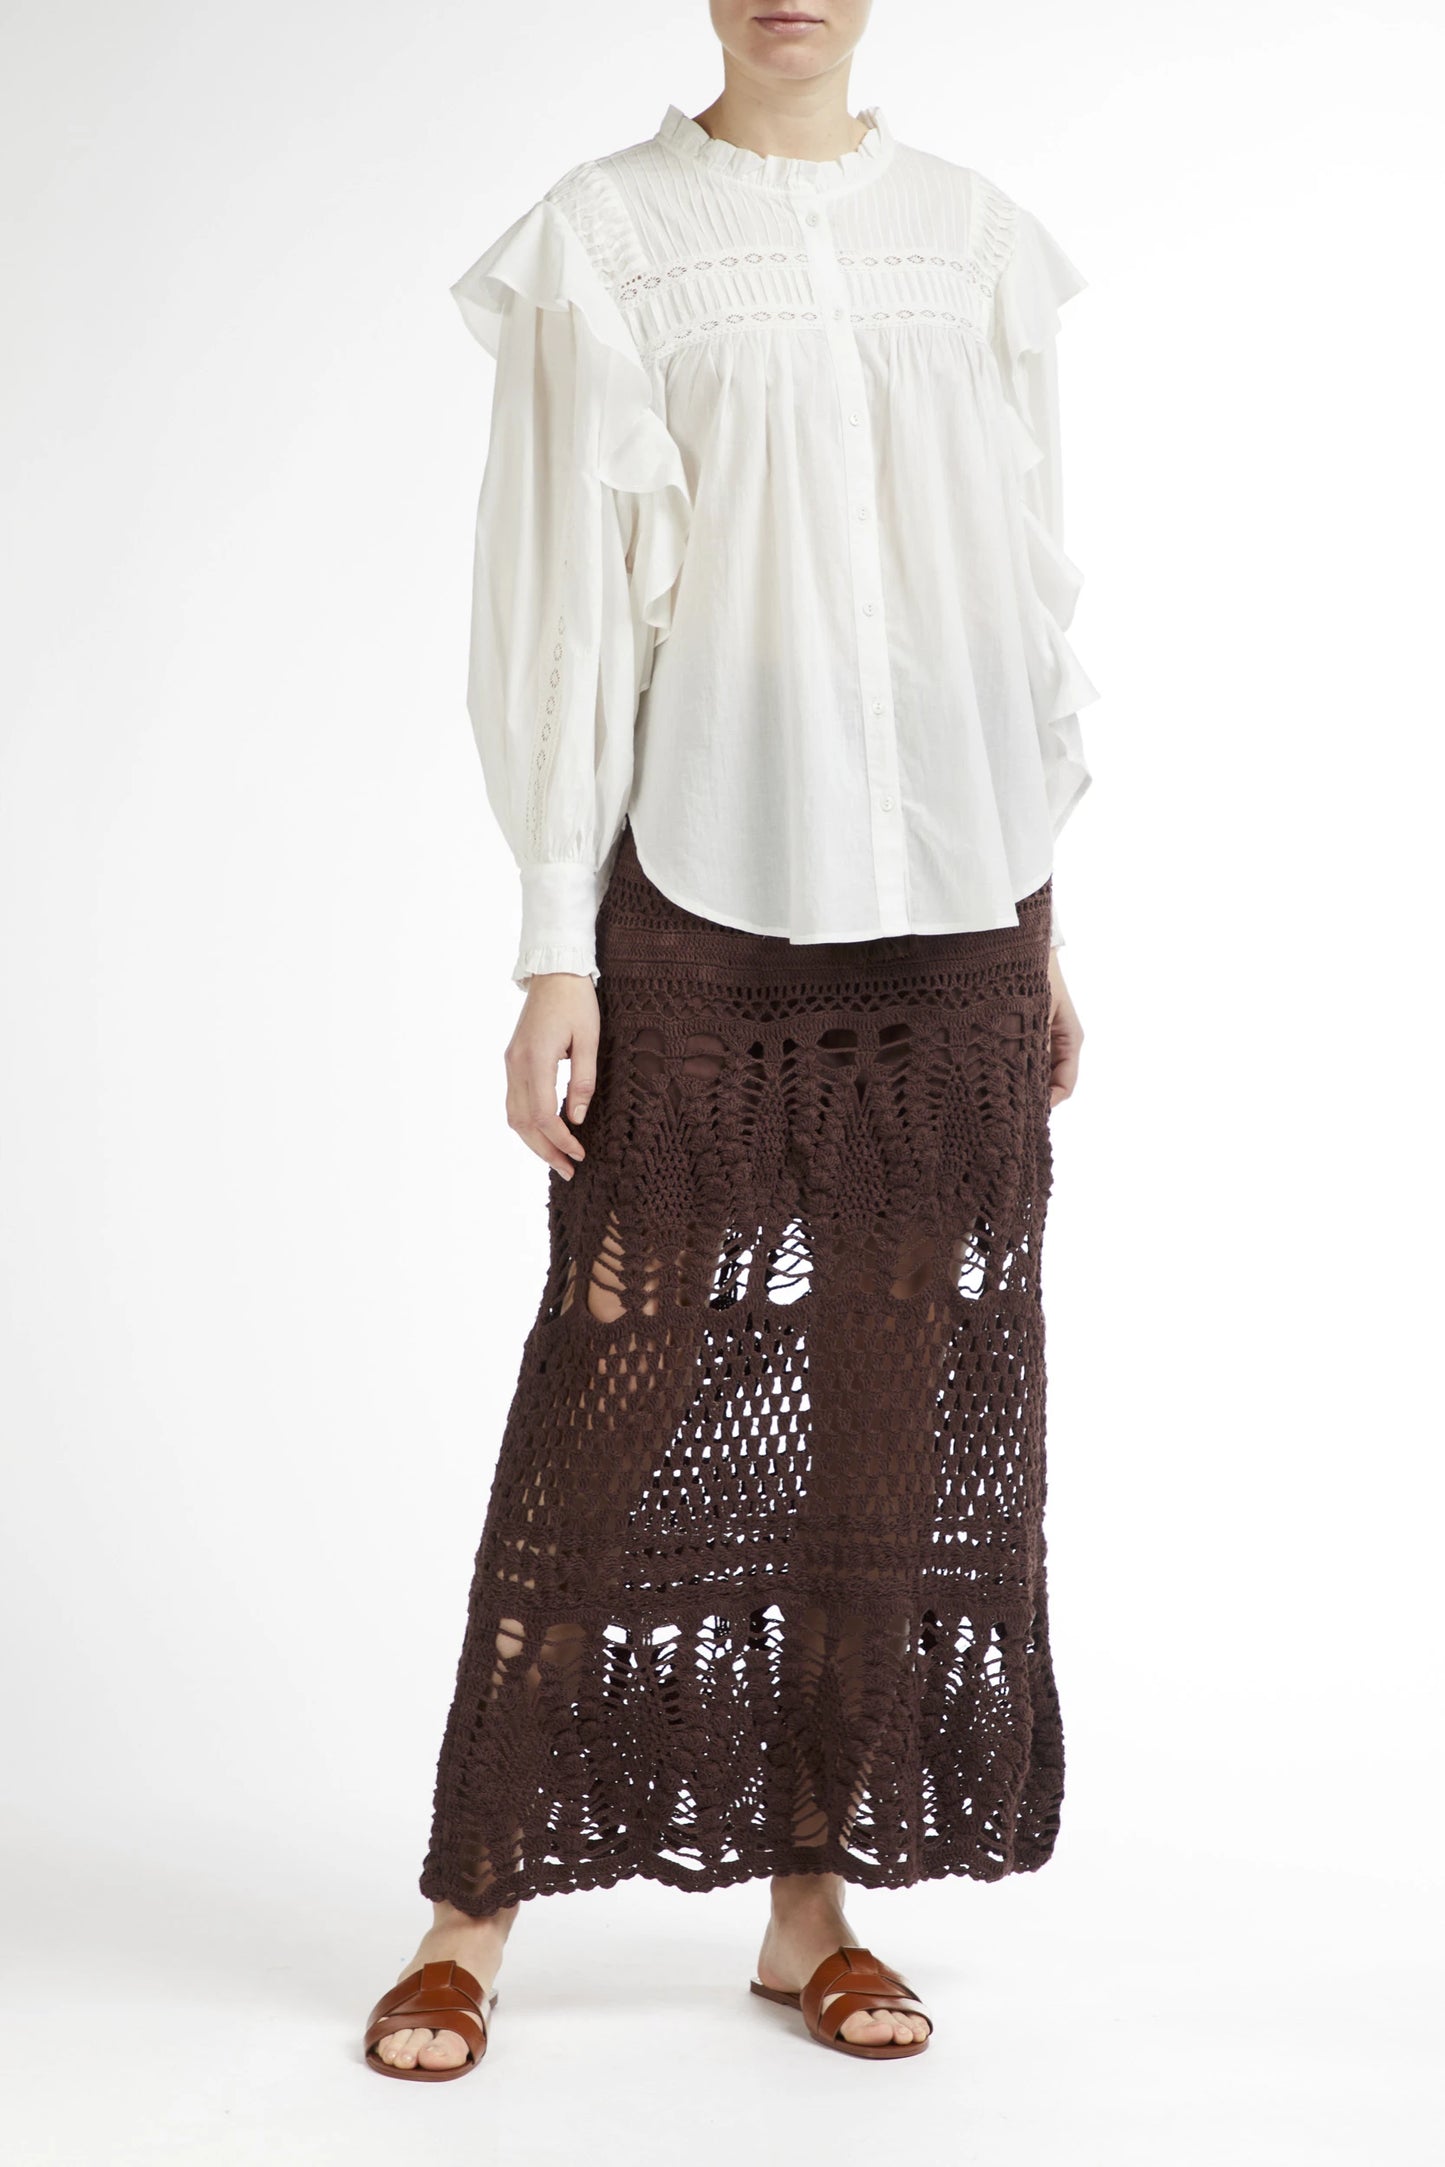 Long Crochet Skirt